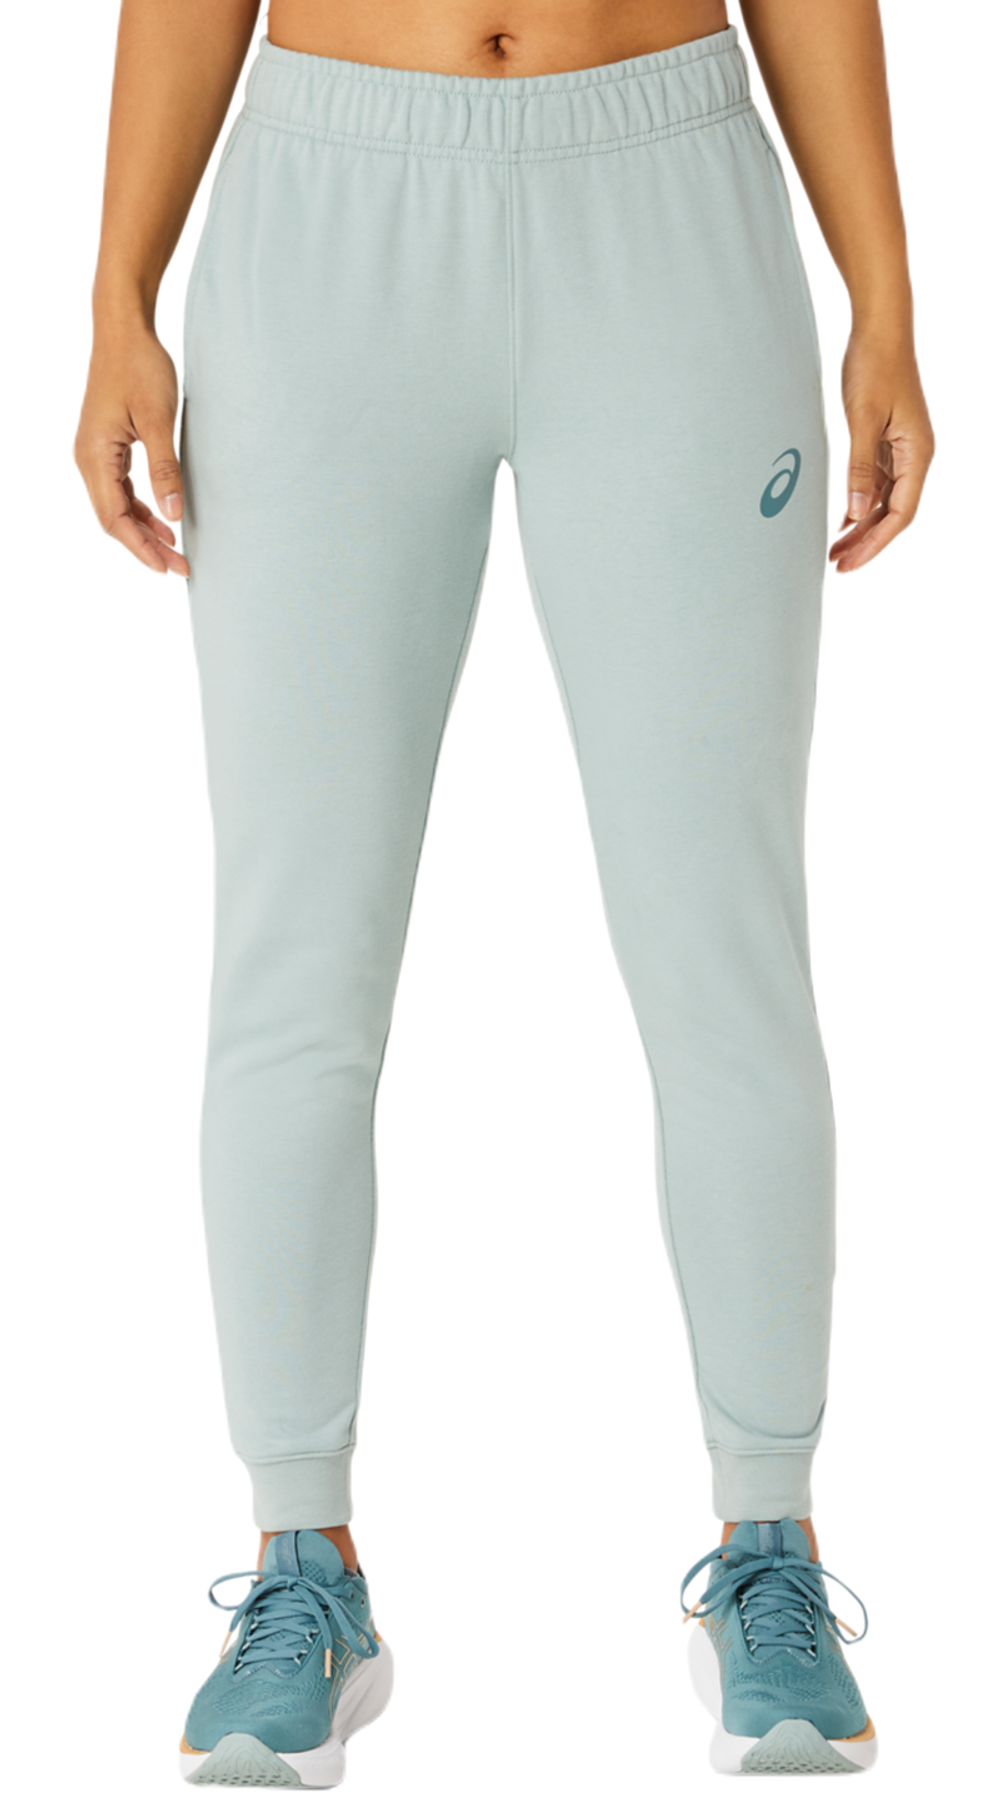 Женские теннисные брюки Asics Big Logo Sweat Pant - ocen haze/foggy teal -купить по выгодной цене